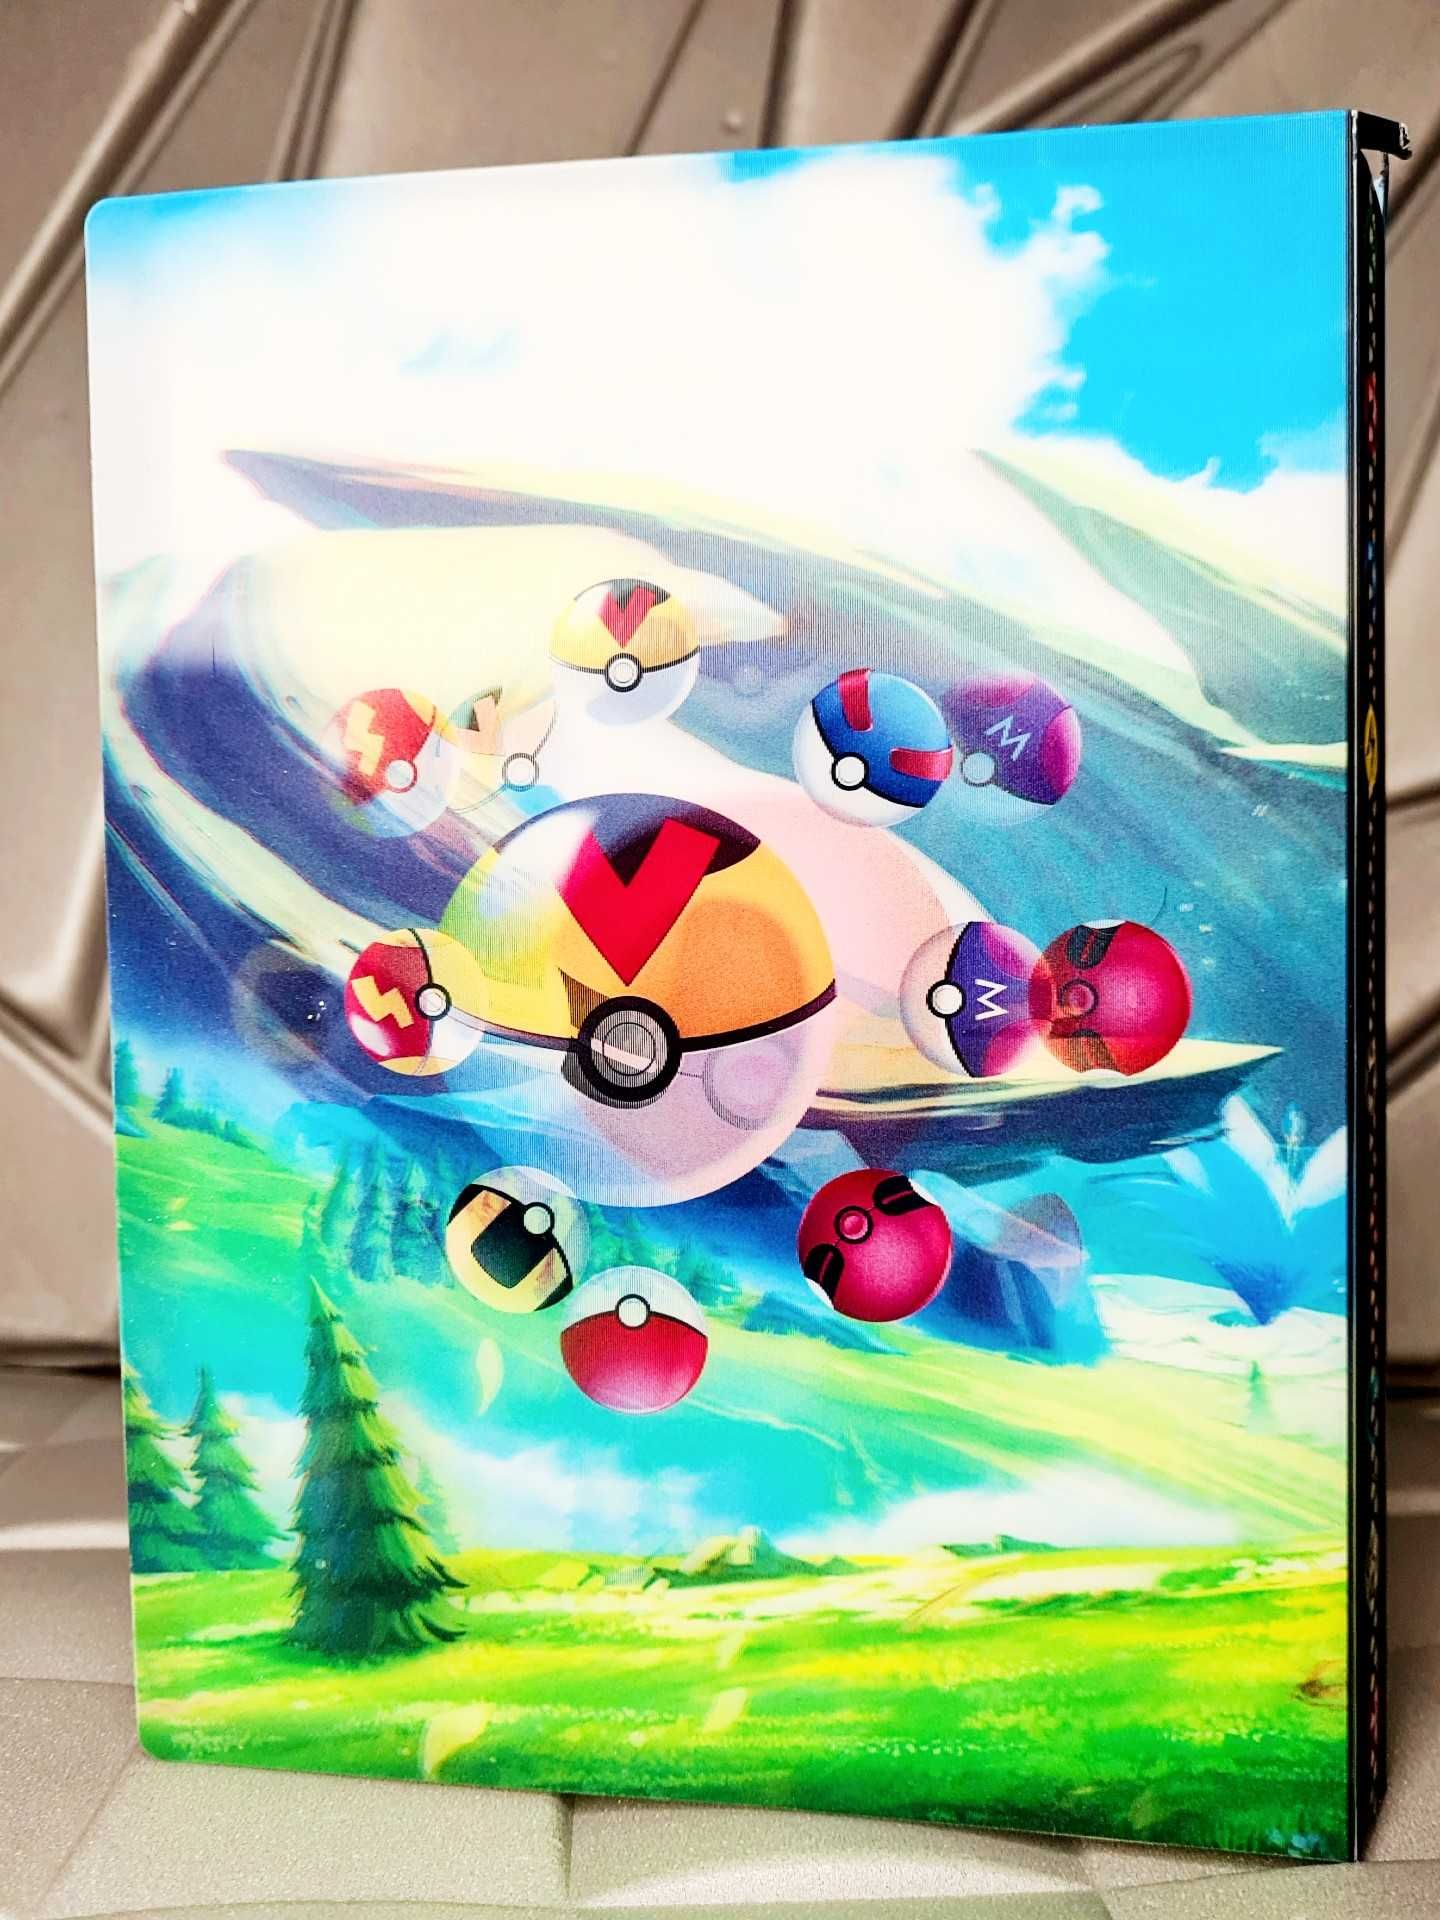 Nowy album na karty Pokemon w formacie A5 i efektem 3D na okładce